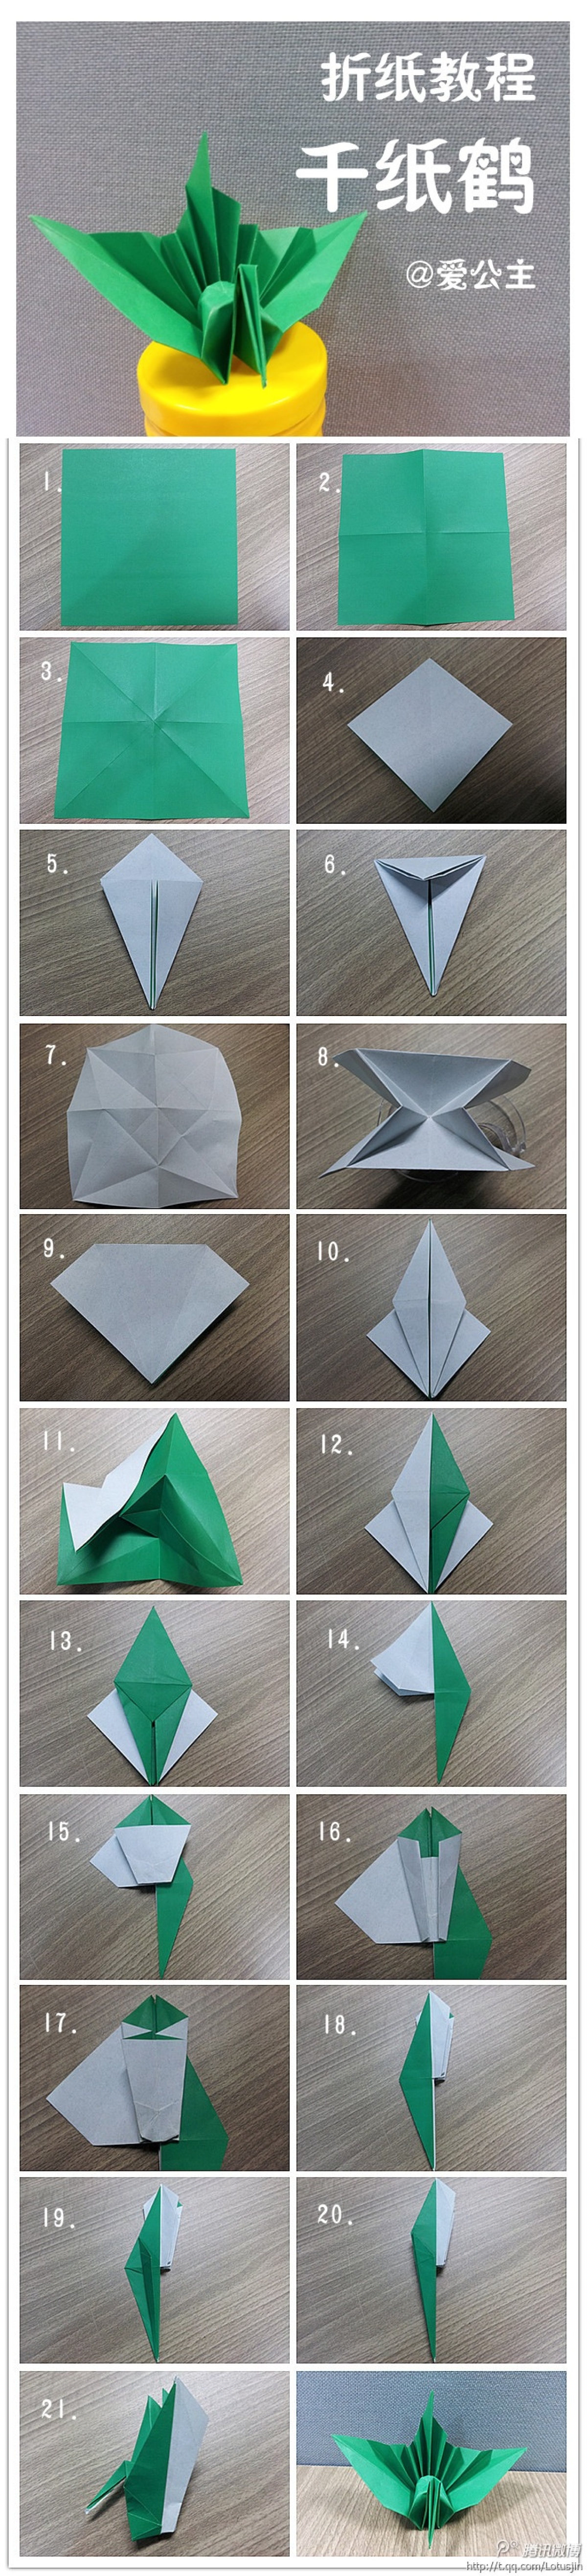 手工达人的折纸教程,图片分享自@爱公主